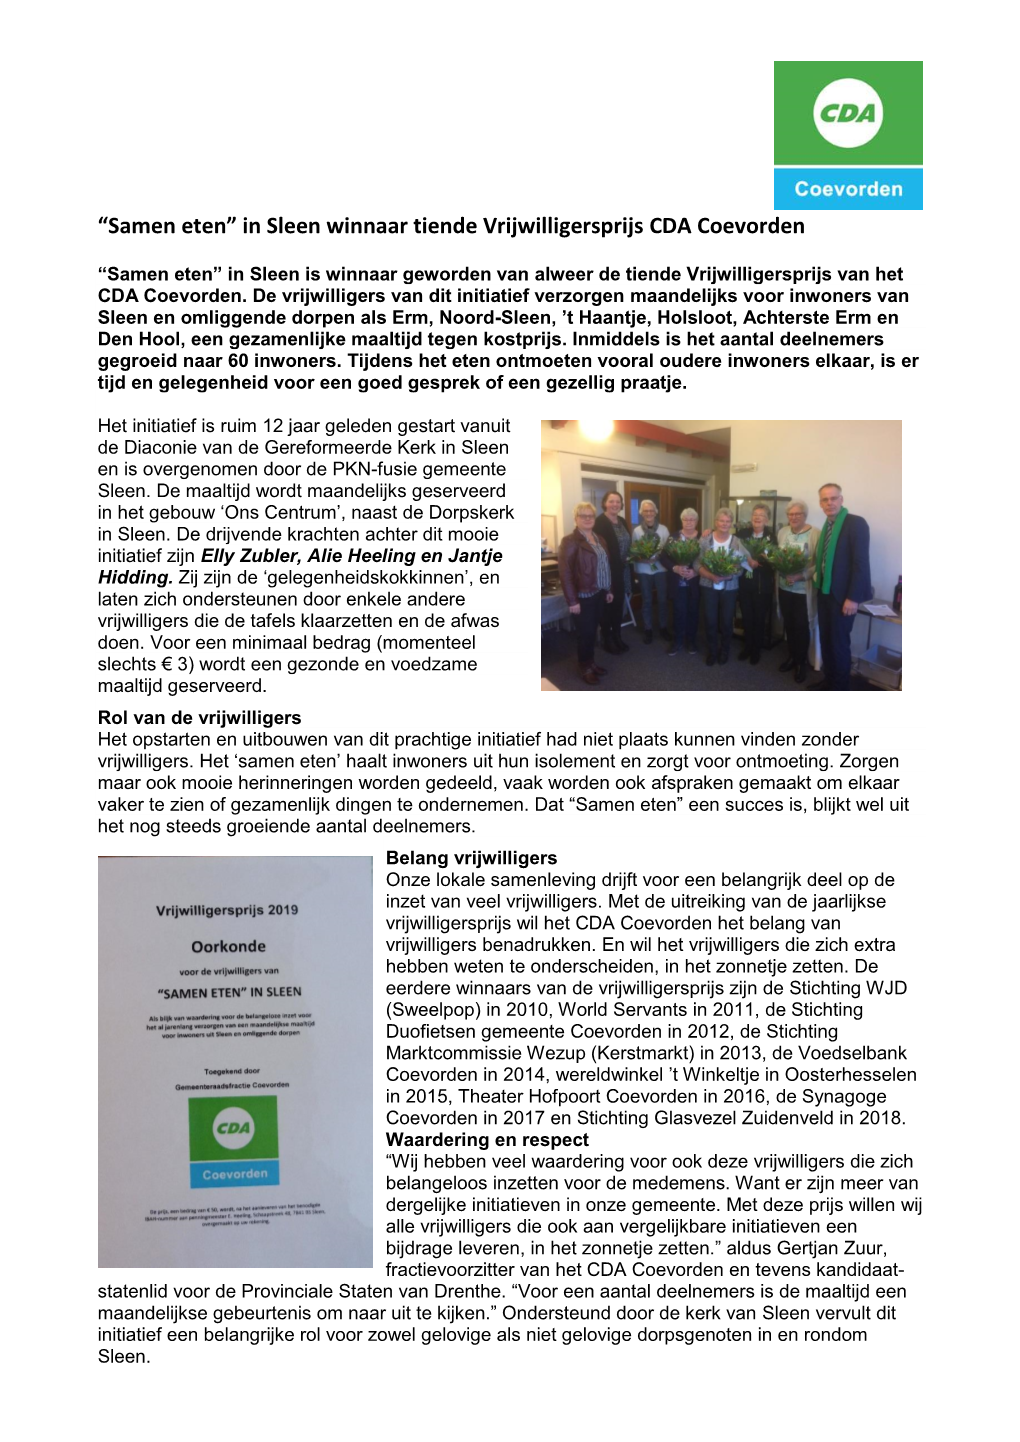 “Samen Eten” in Sleen Winnaar Tiende Vrijwilligersprijs CDA Coevorden